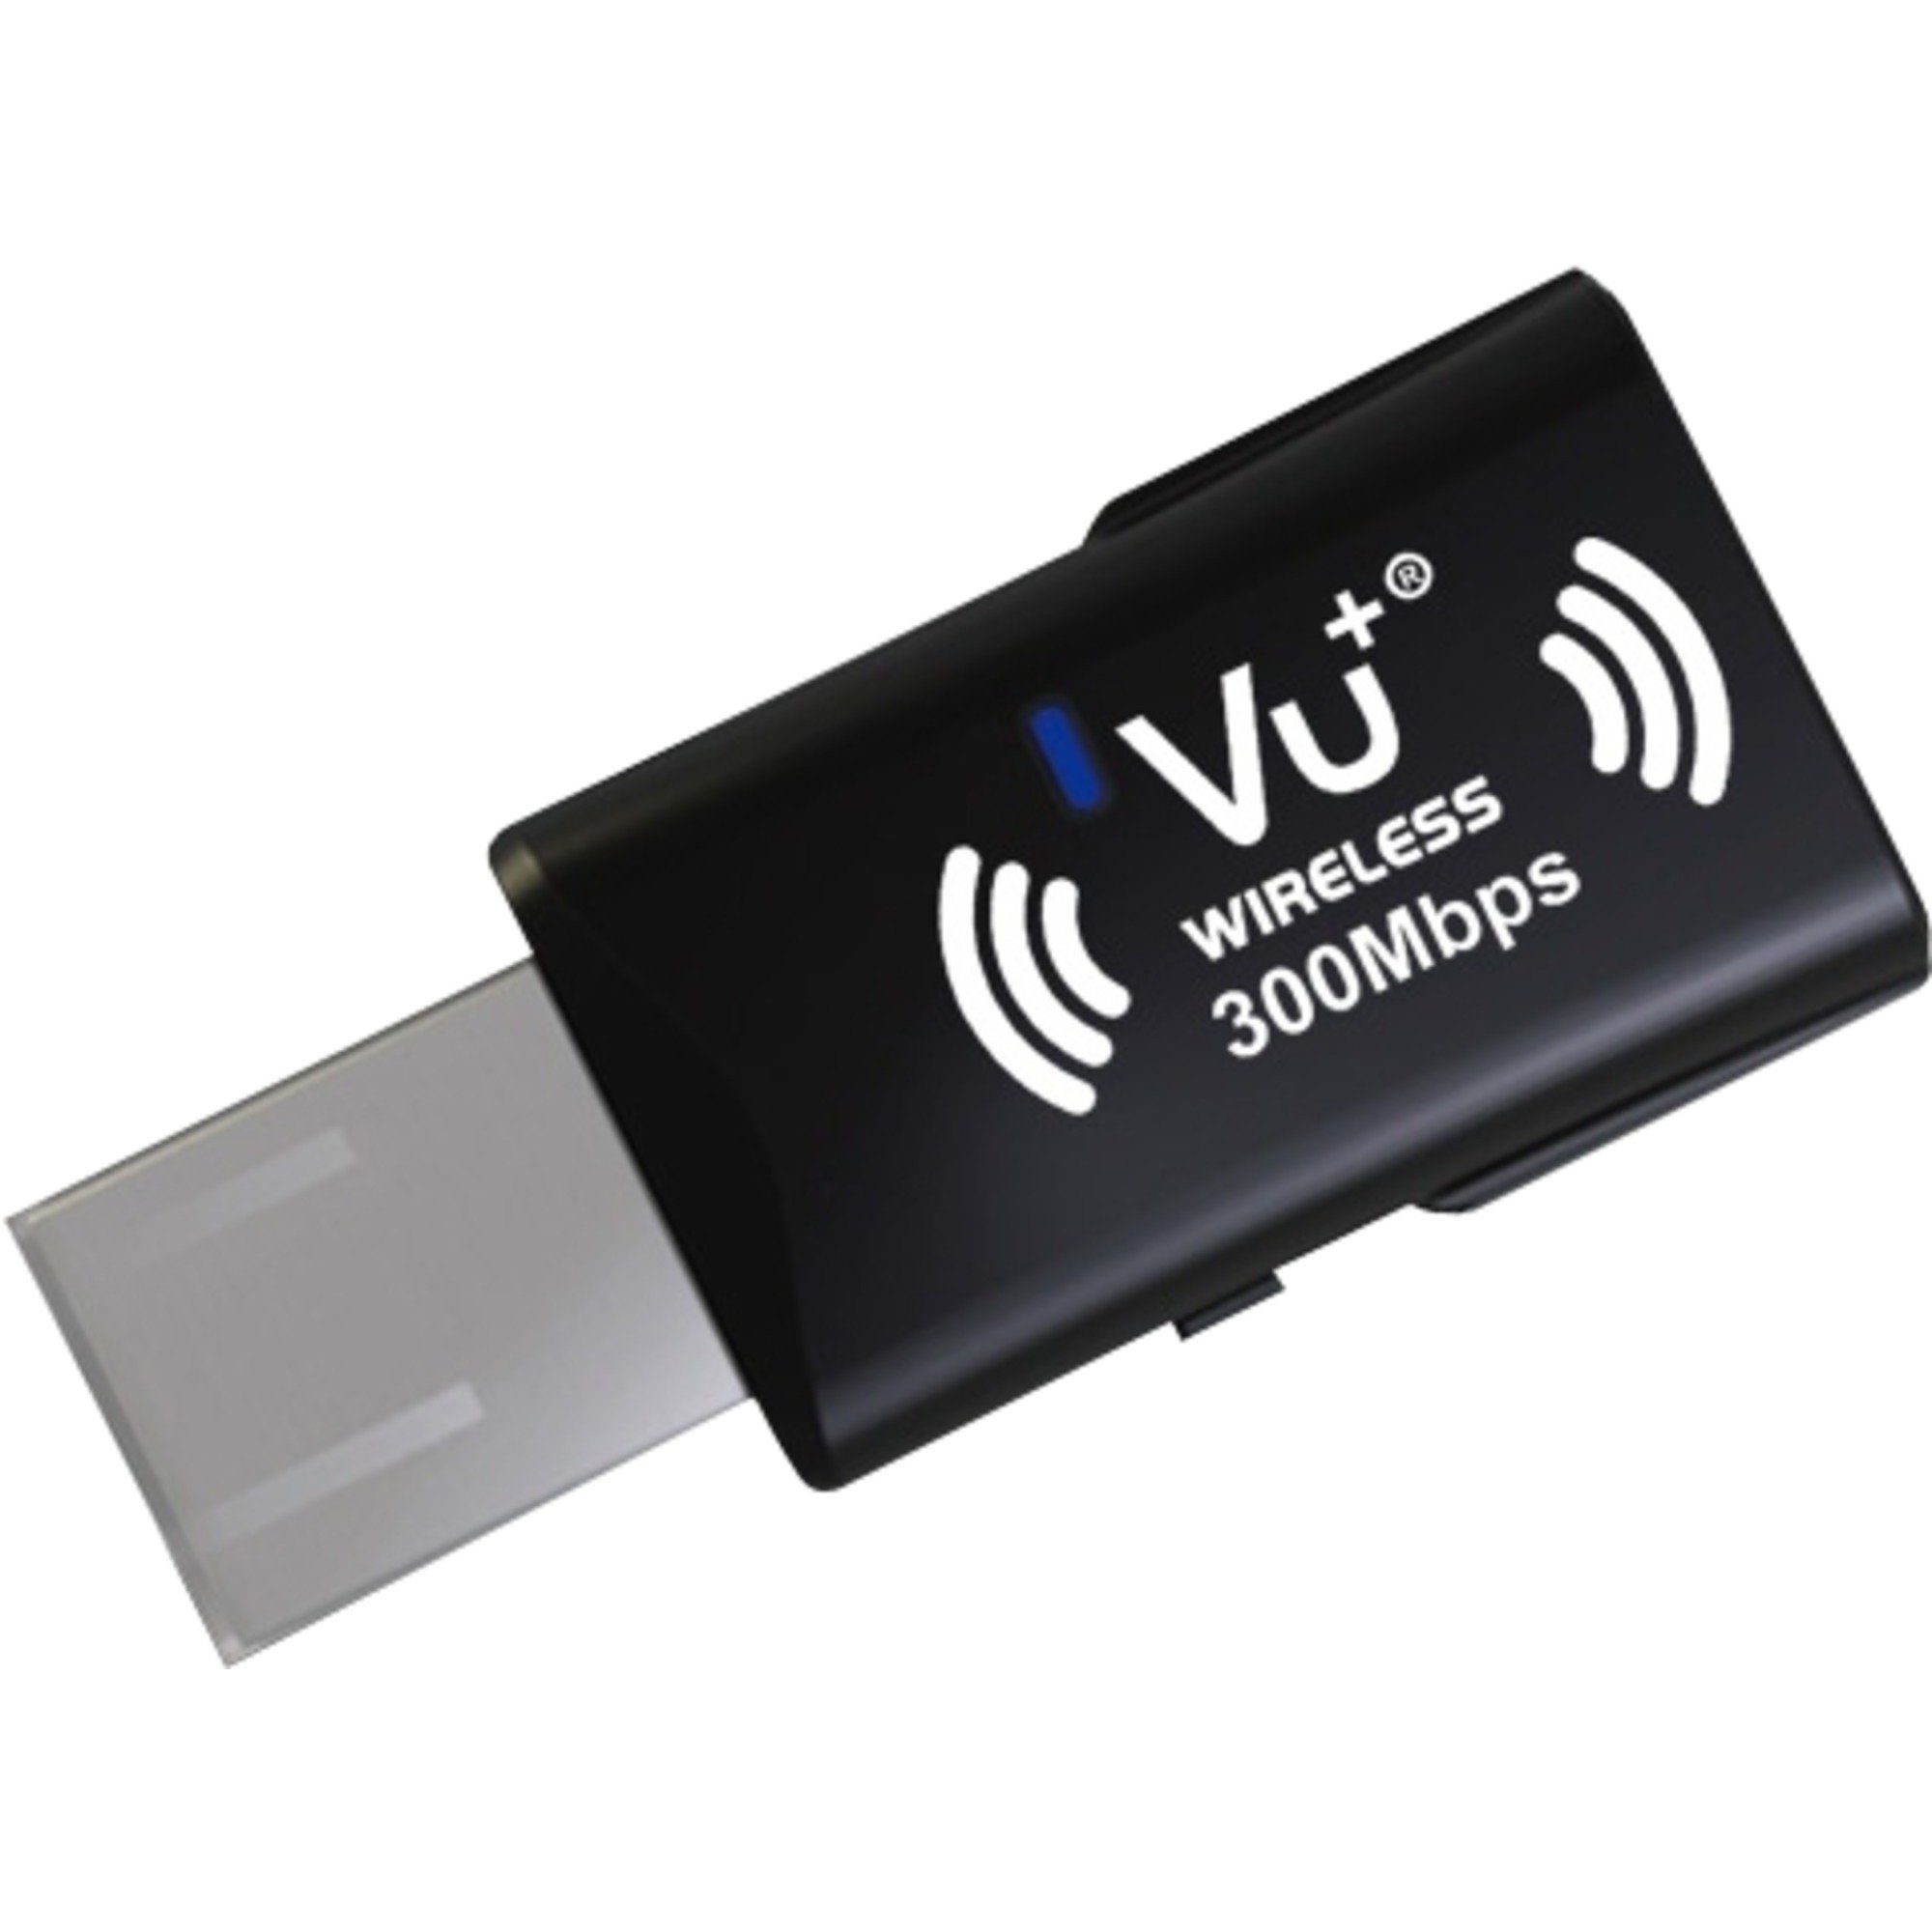 VU+ Wireless USB Adapter 300 Mbps incl. WPS Setup Netzwerk-Adapter